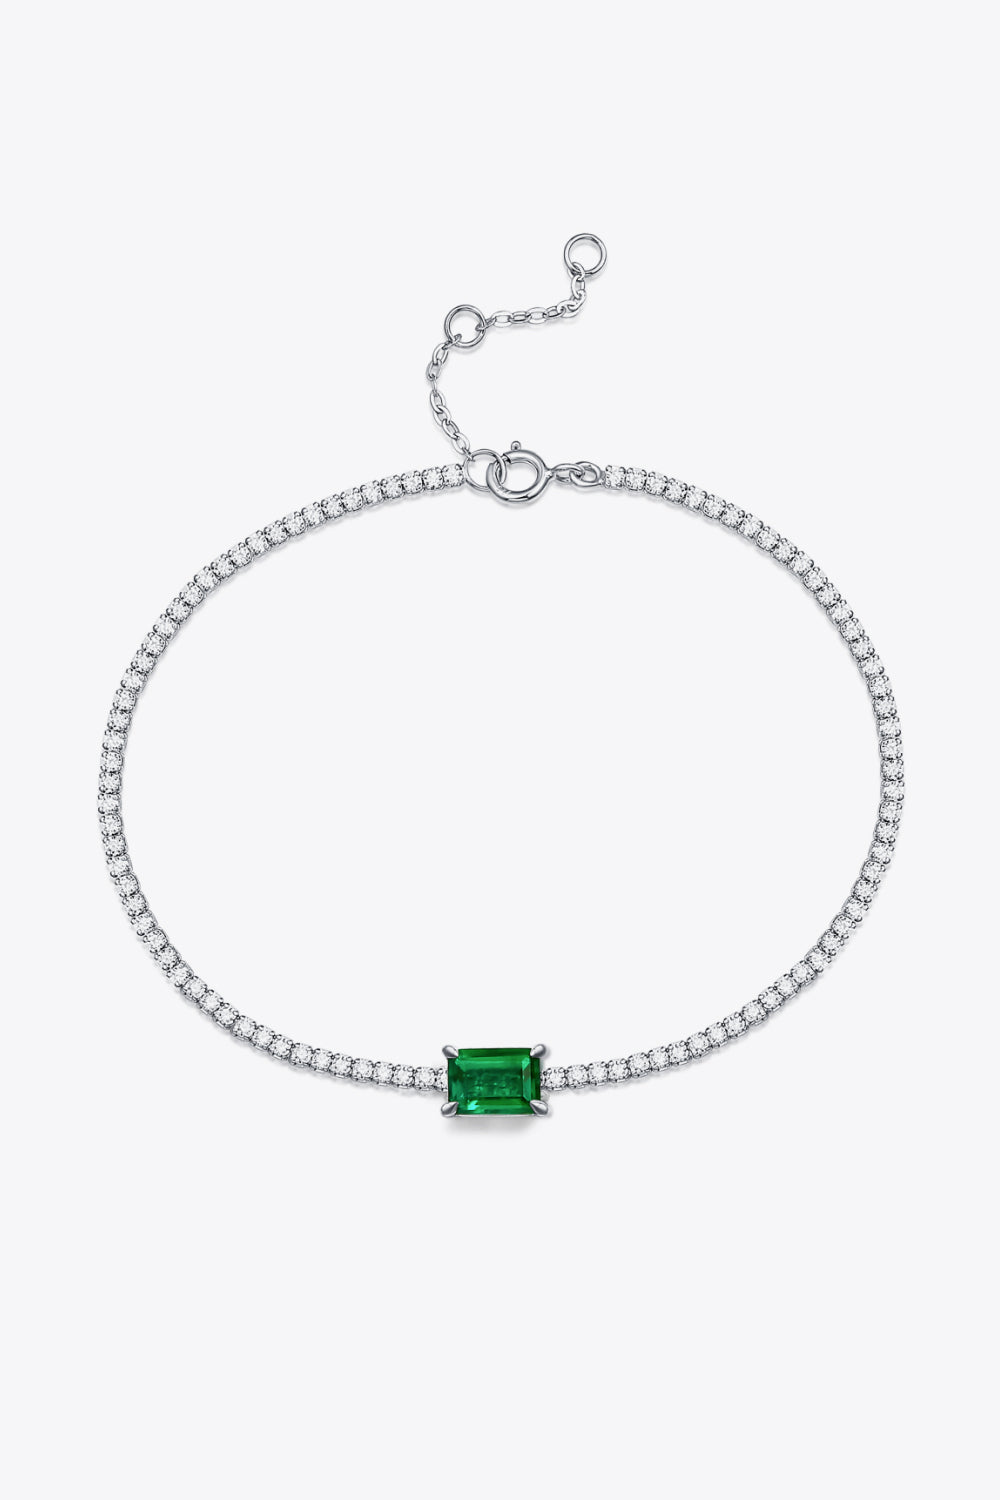 Adored 1 Carat Lab-Grown Emerald Bracelet - Green / One Size - Women’s Jewelry - Bracelets - 5 - 2024